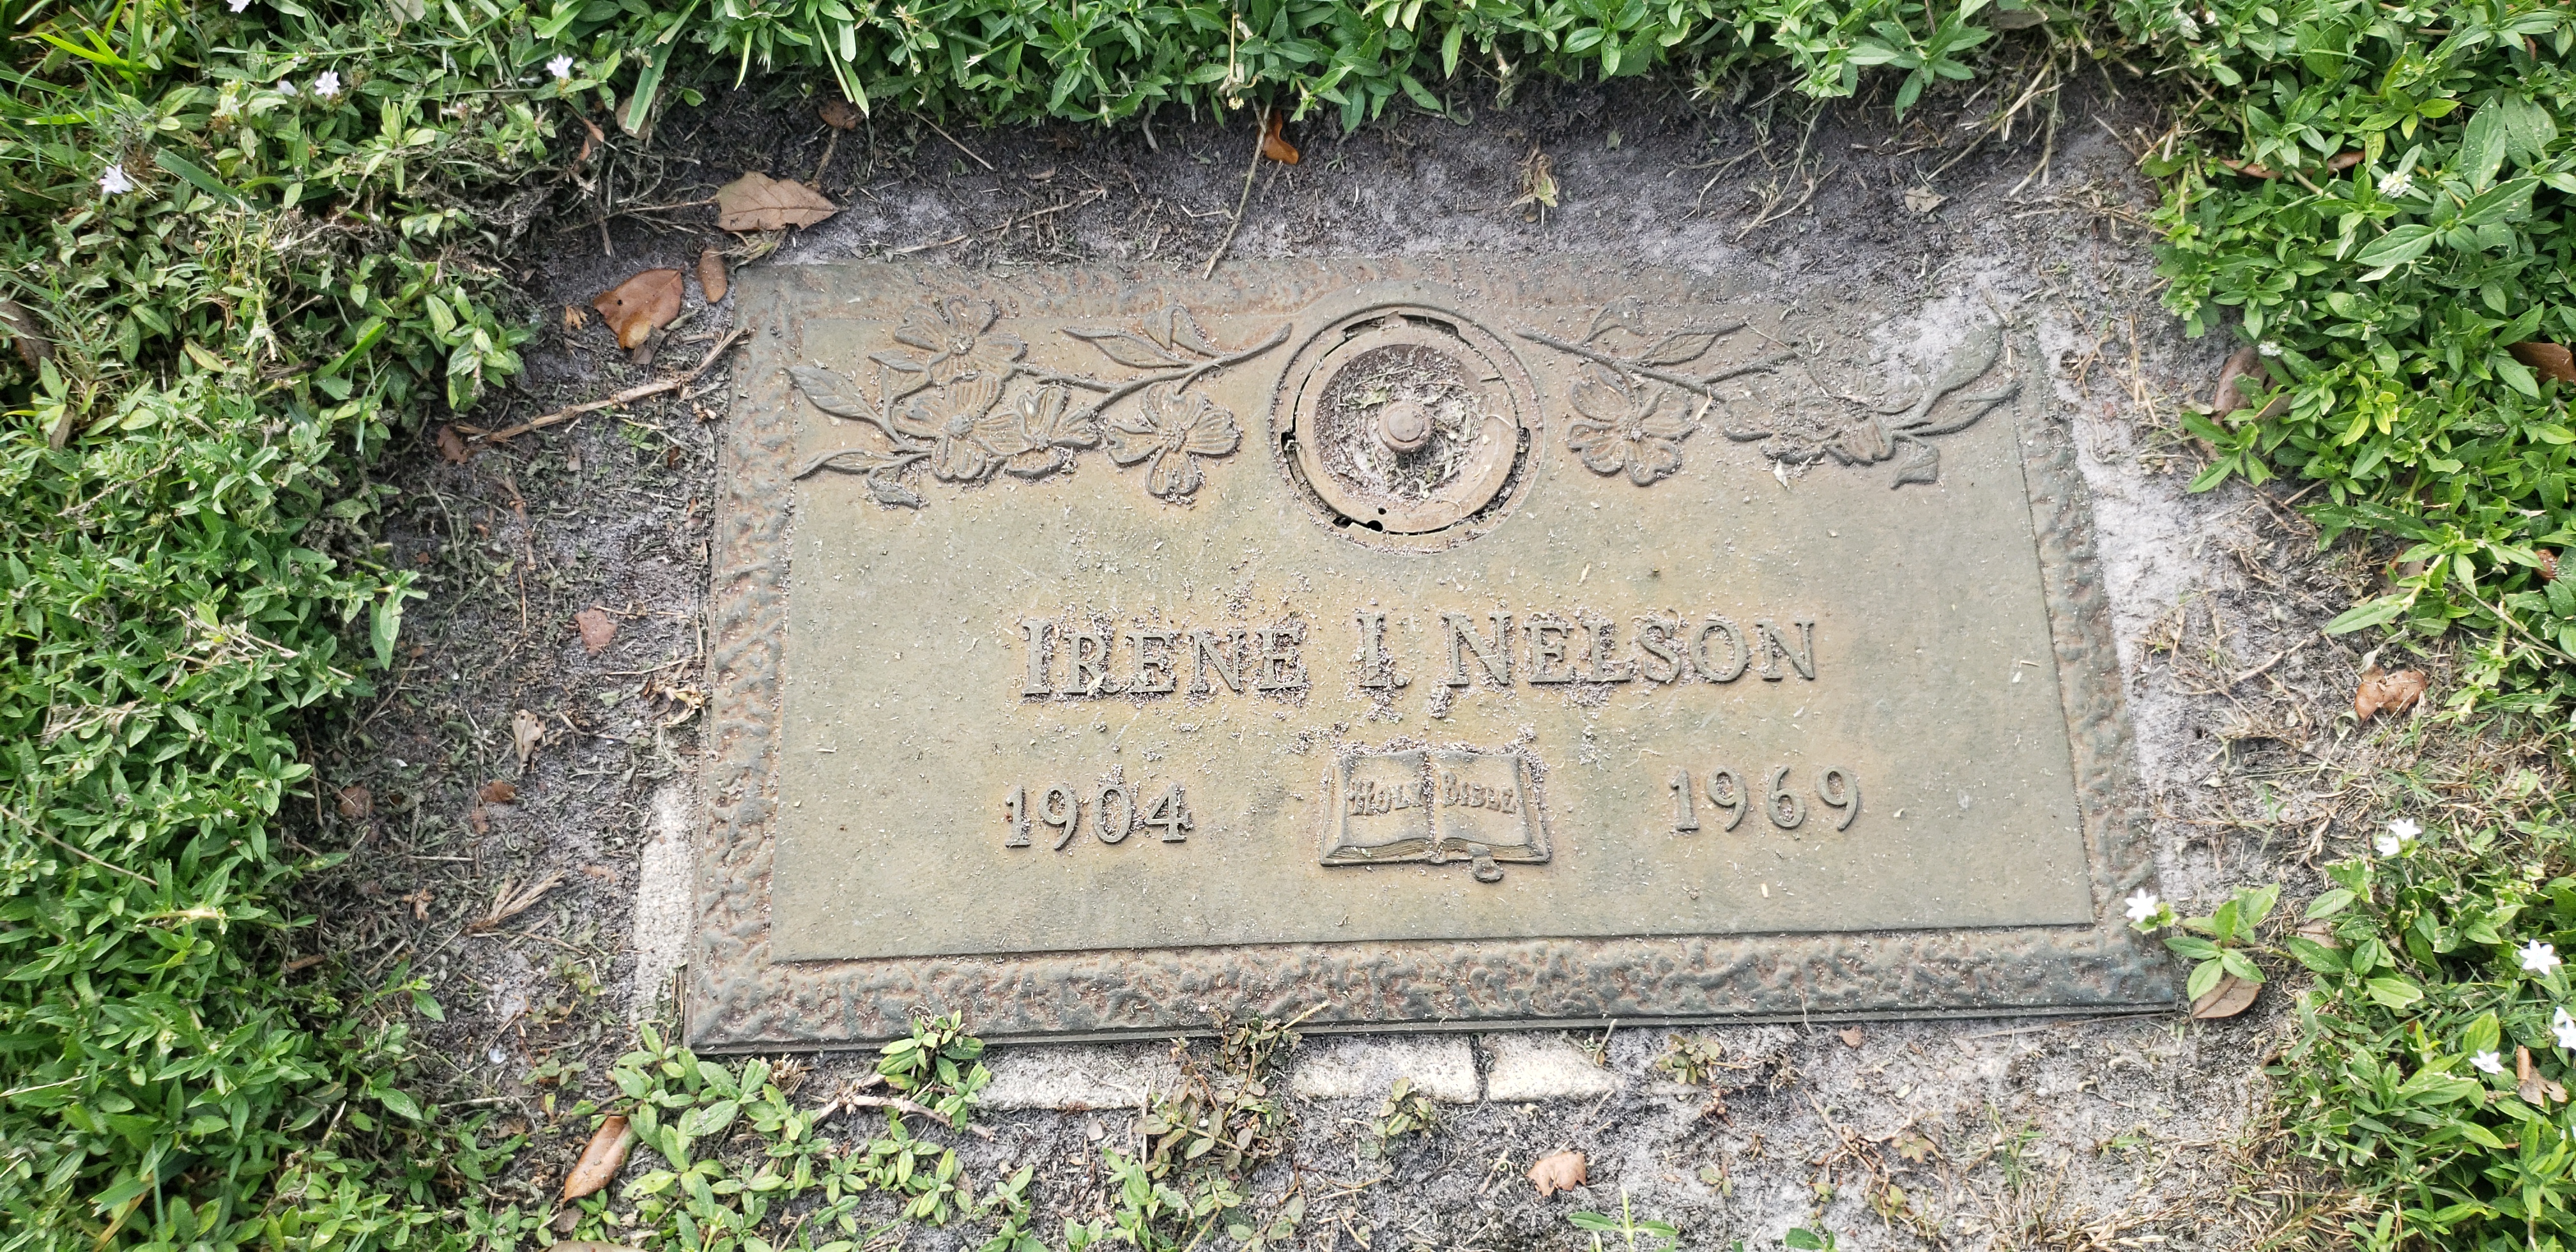 Irene I Nelson